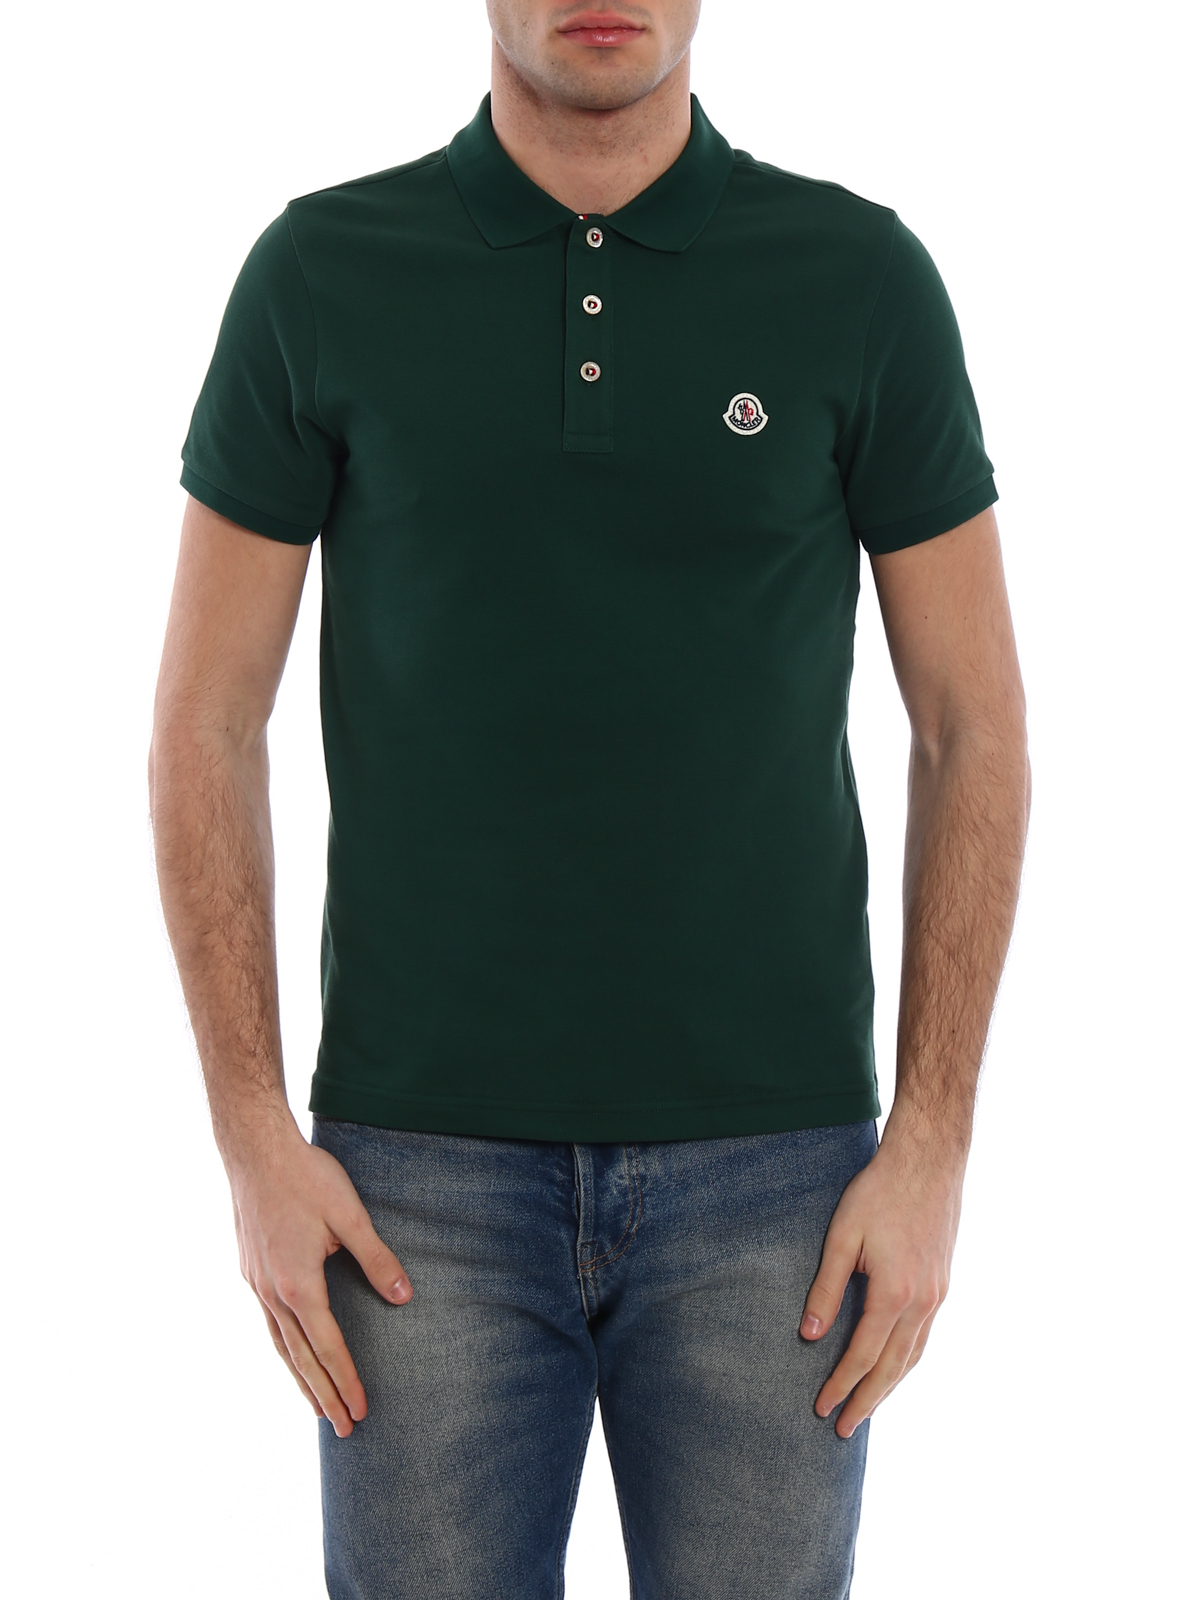 Polo shirts Moncler - Tricolour placket green polo shirt 